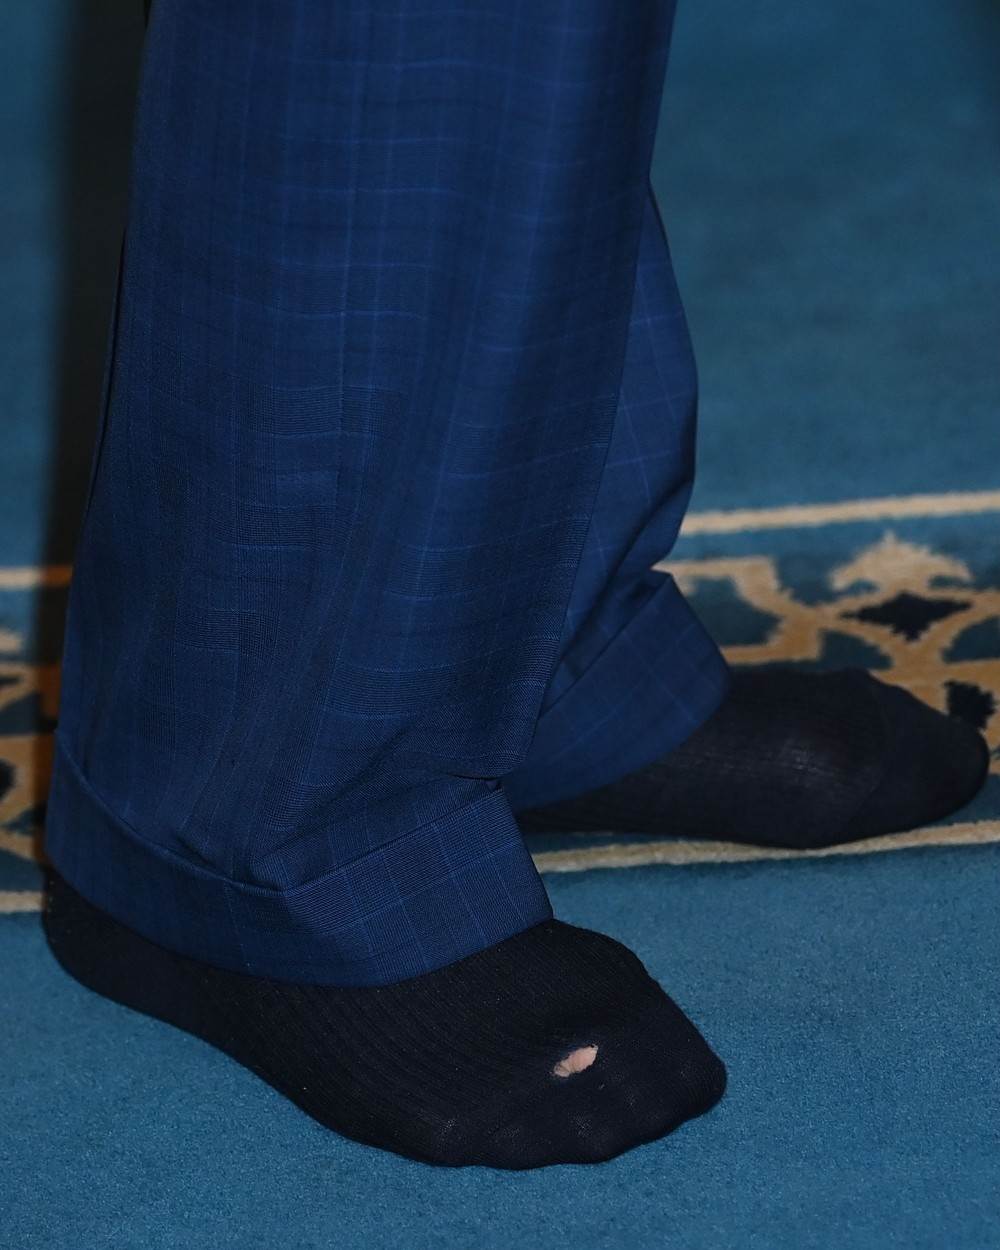 Kralj Charles i Camilla Parker Bowles bili su u posjetu džamiji te je kralj pokazao rupu na čarapama